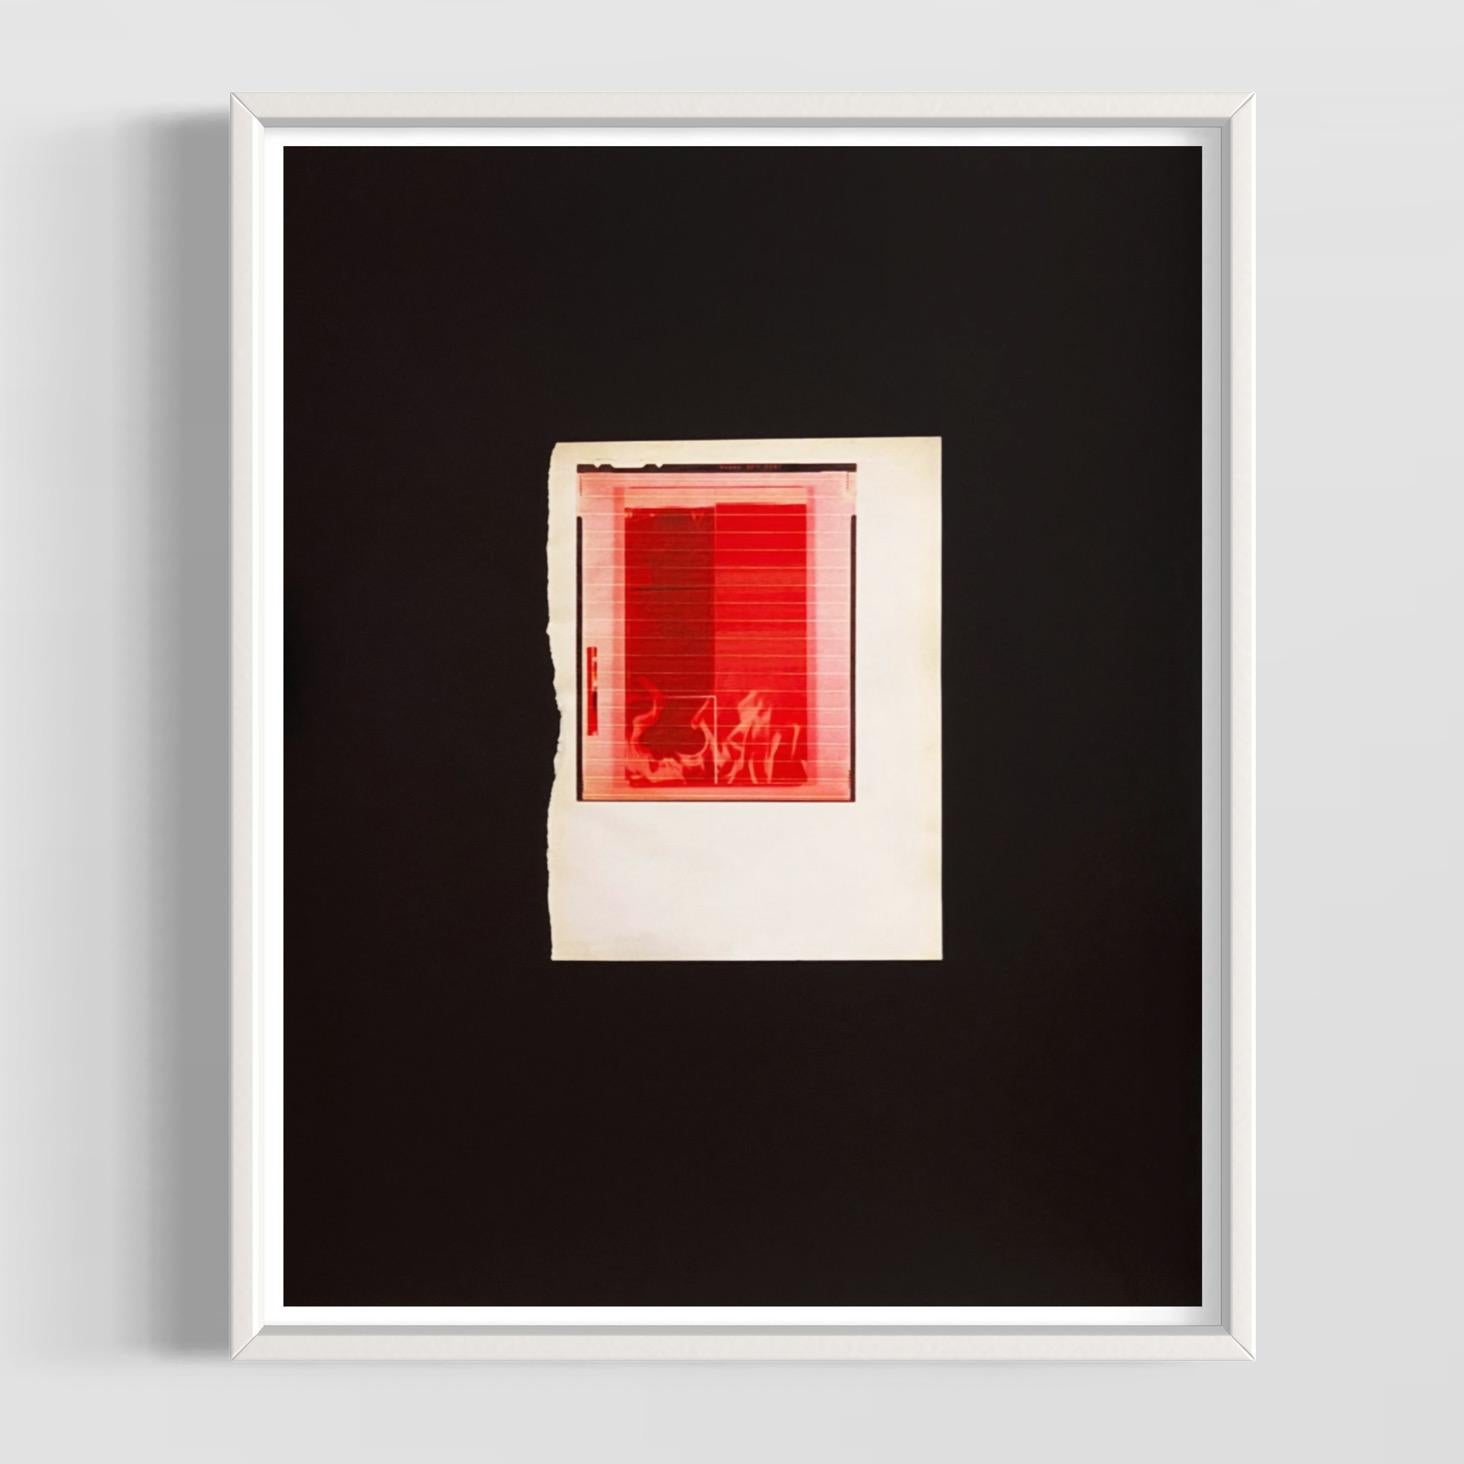 Wade Guyton (Amerikaner, geb. 1972)
Rotes Feuer für SMC, 2018
Medium: Epson Ultrachrome HDX Druck auf beschichtetem Kunstdruckpapier
Abmessungen: 19 x 15 Zoll (48 x 38 cm)
Auflage von 100 + 10 AP: Handsigniert und nummeriert
Zustand: Neuwertig (wird